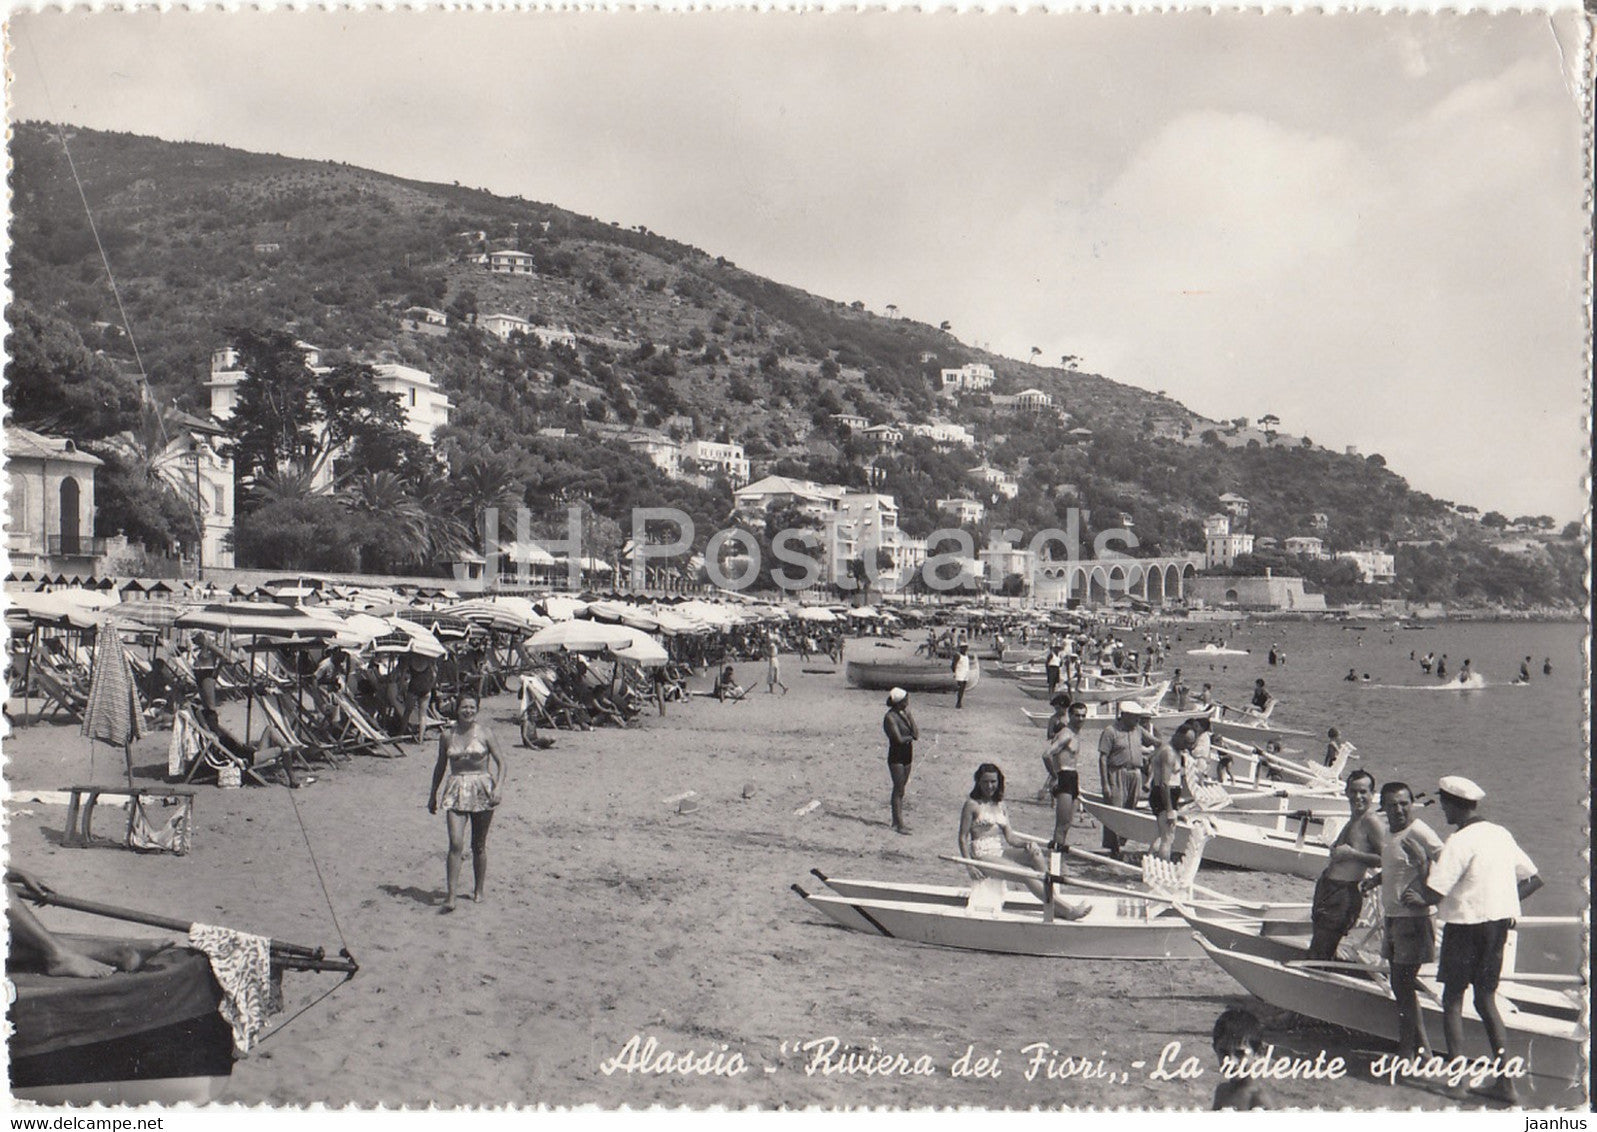 Alassio - Riviera dei Fiori - La ridente spiaggia - The Flower Shore - beach - boat - 1953 - old postcard - Italy - used - JH Postcards